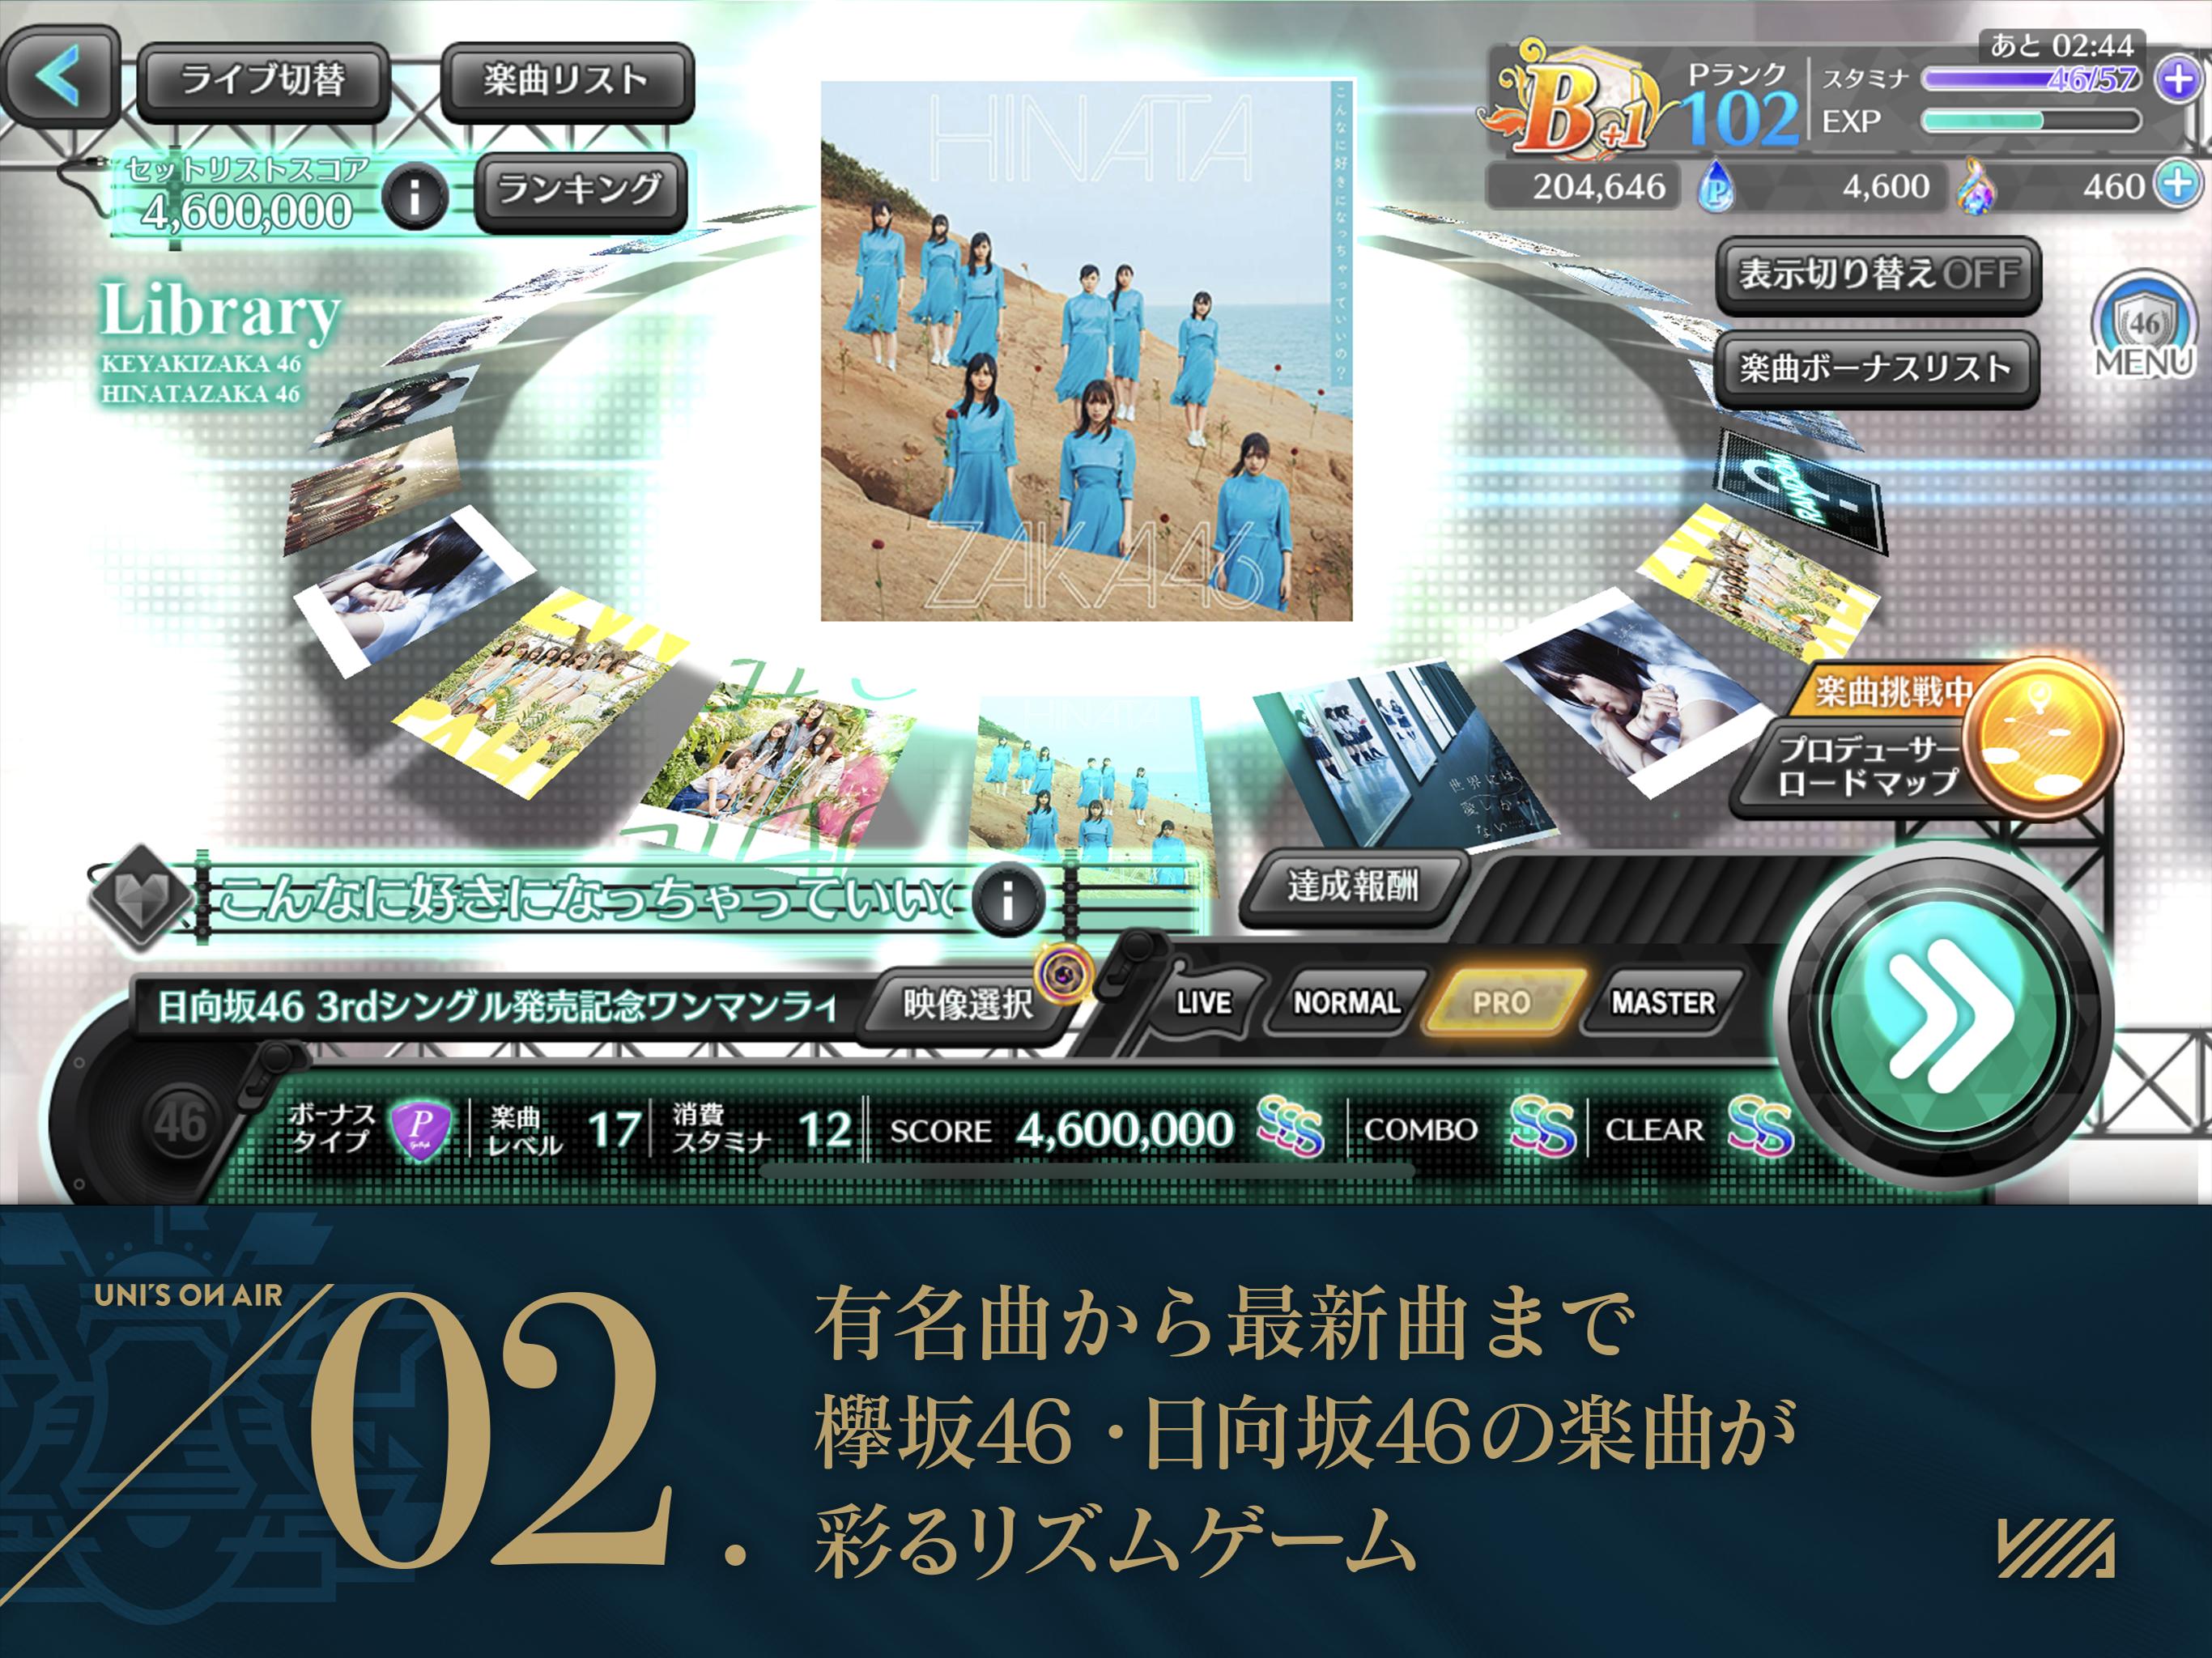 欅坂46・日向坂46 UNI'S ON AIR 2.0.0 Screenshot 8